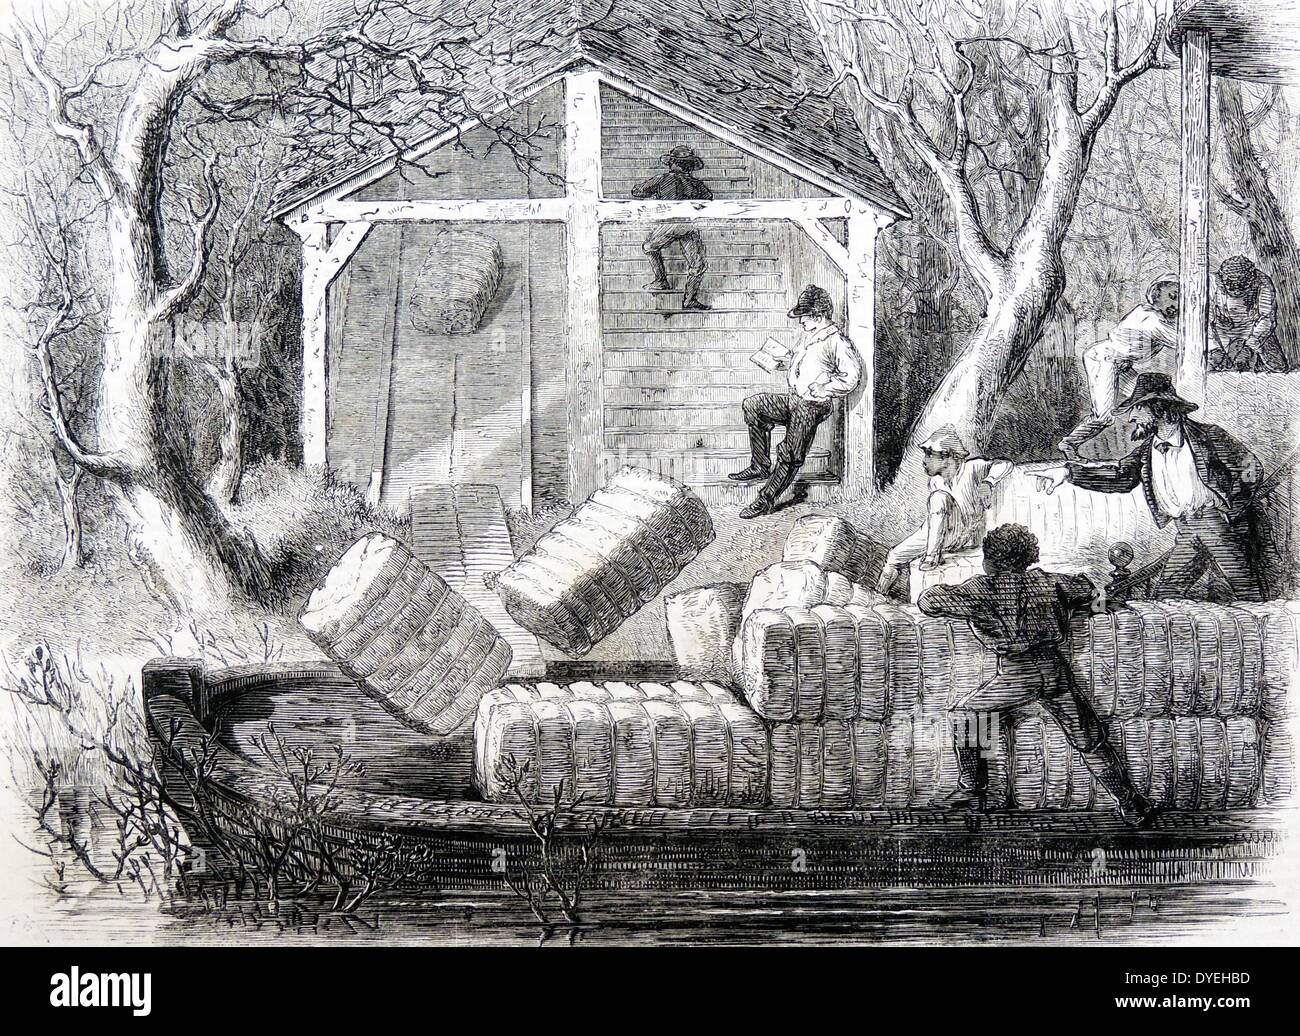 Baumwollballen auf ein Boot an der Unterseite einer Schießen auf den Alabama River, USA geladen. Aufseher, rechts, Regie Sklavenarbeit. Holzschnitt, London, 1861. Stockfoto